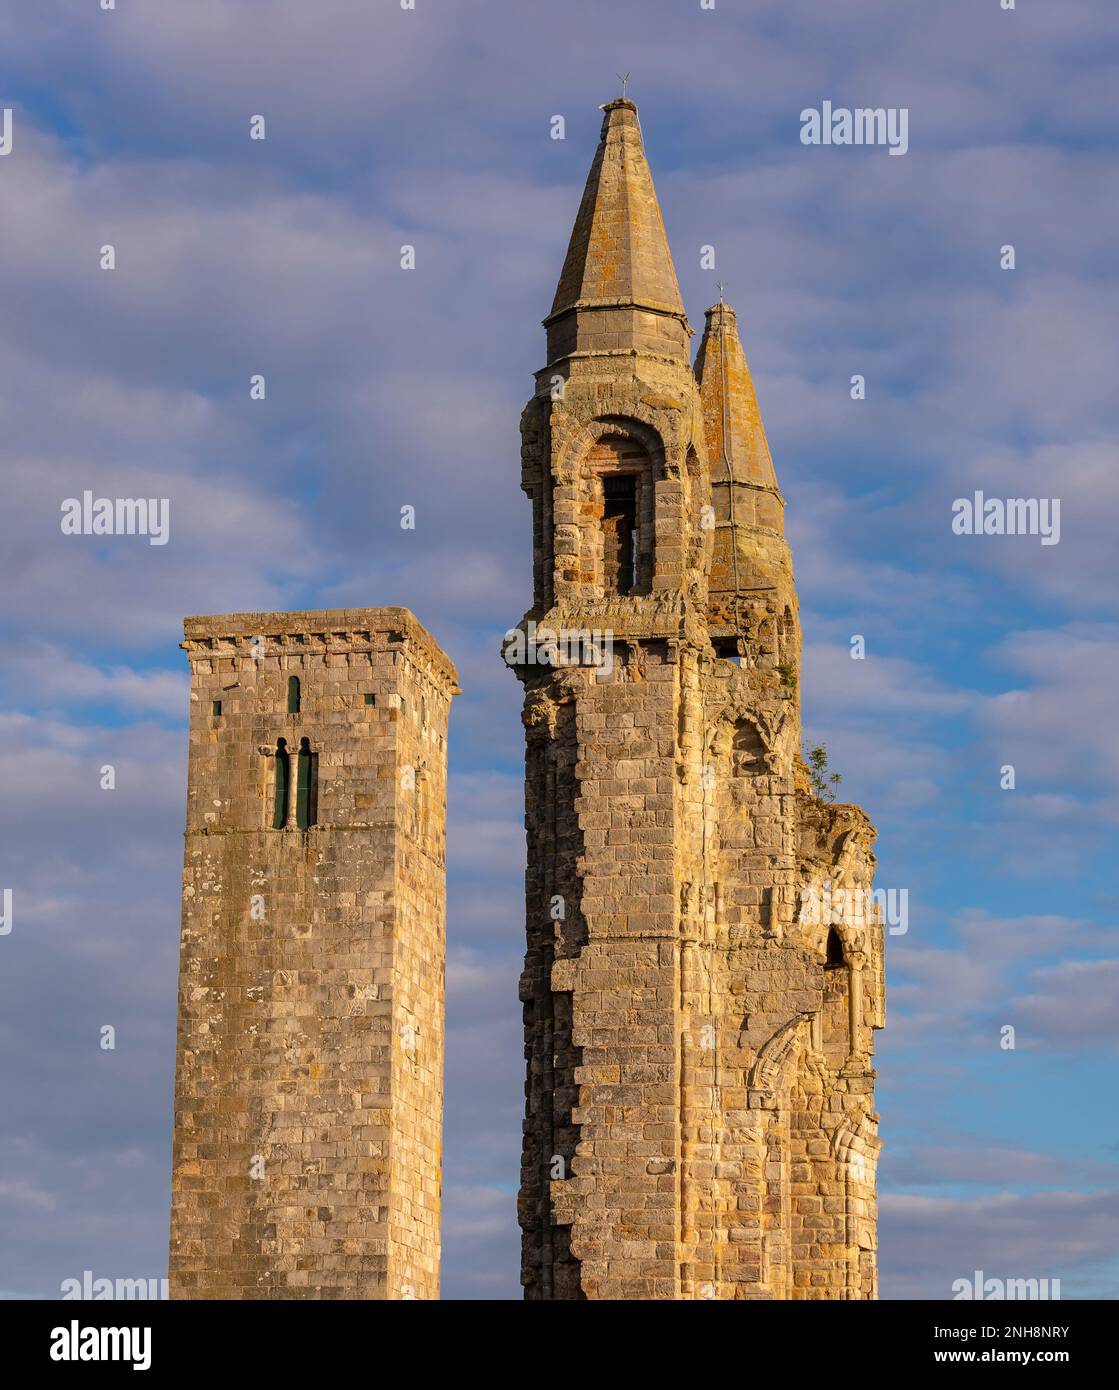 ST ANDREWS, SCOZIA, EUROPA - rovine della Cattedrale di St Andrews. St Rule's Tower, a sinistra. Foto Stock